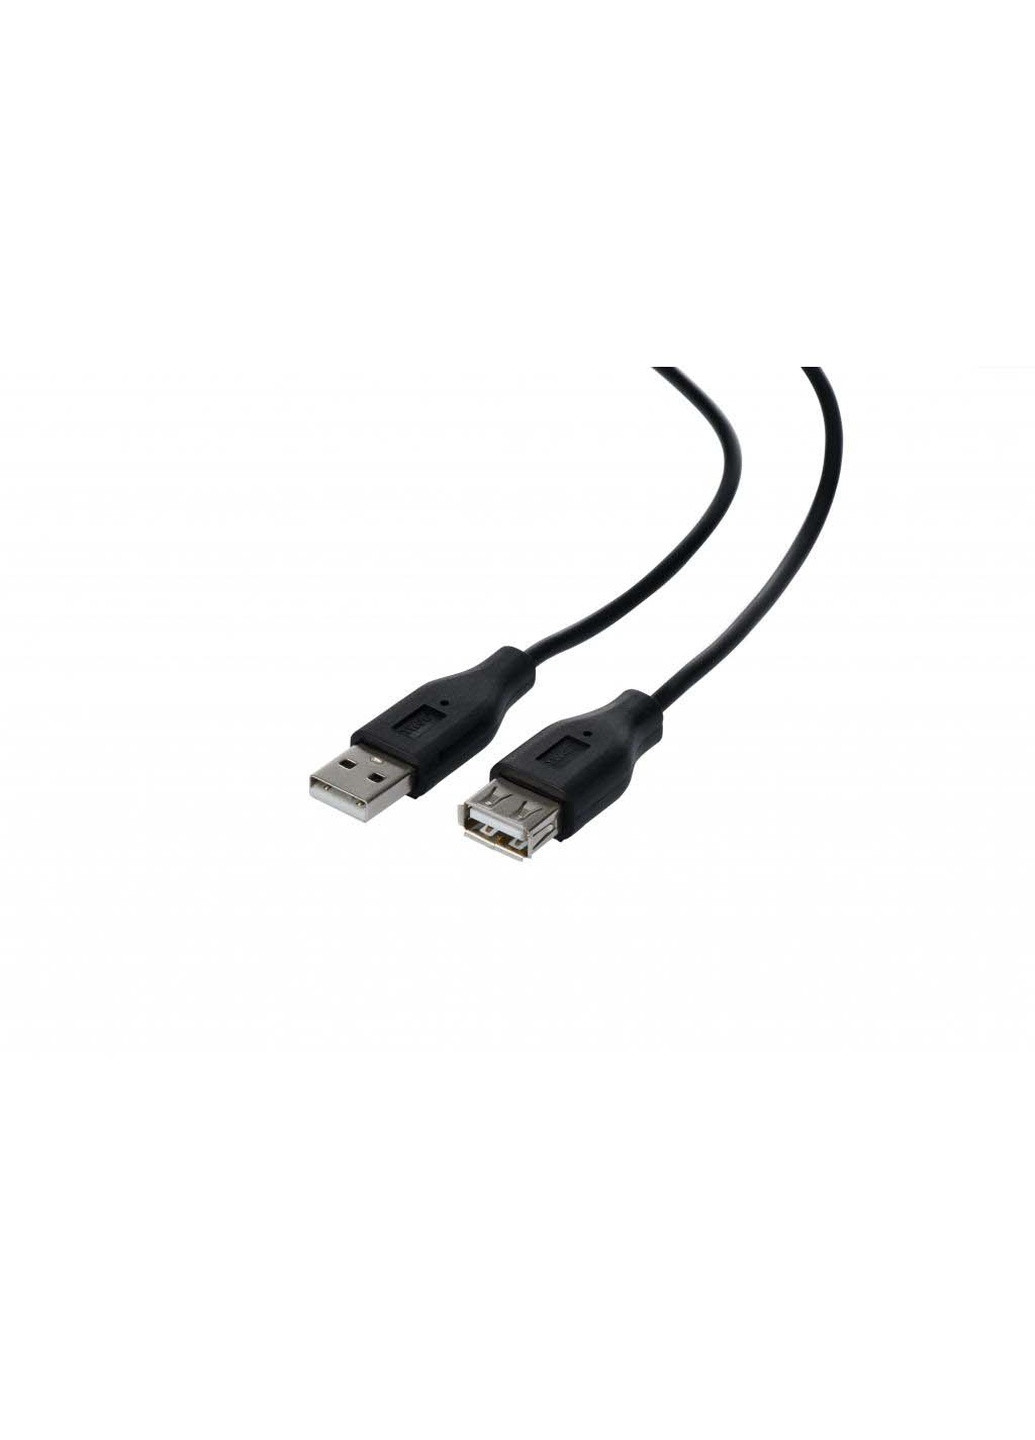 Дата кабель USB 2.0 AM / AF 1.8m (-W-3168) 2E usb 2.0 am/af 1.8m (239380968)